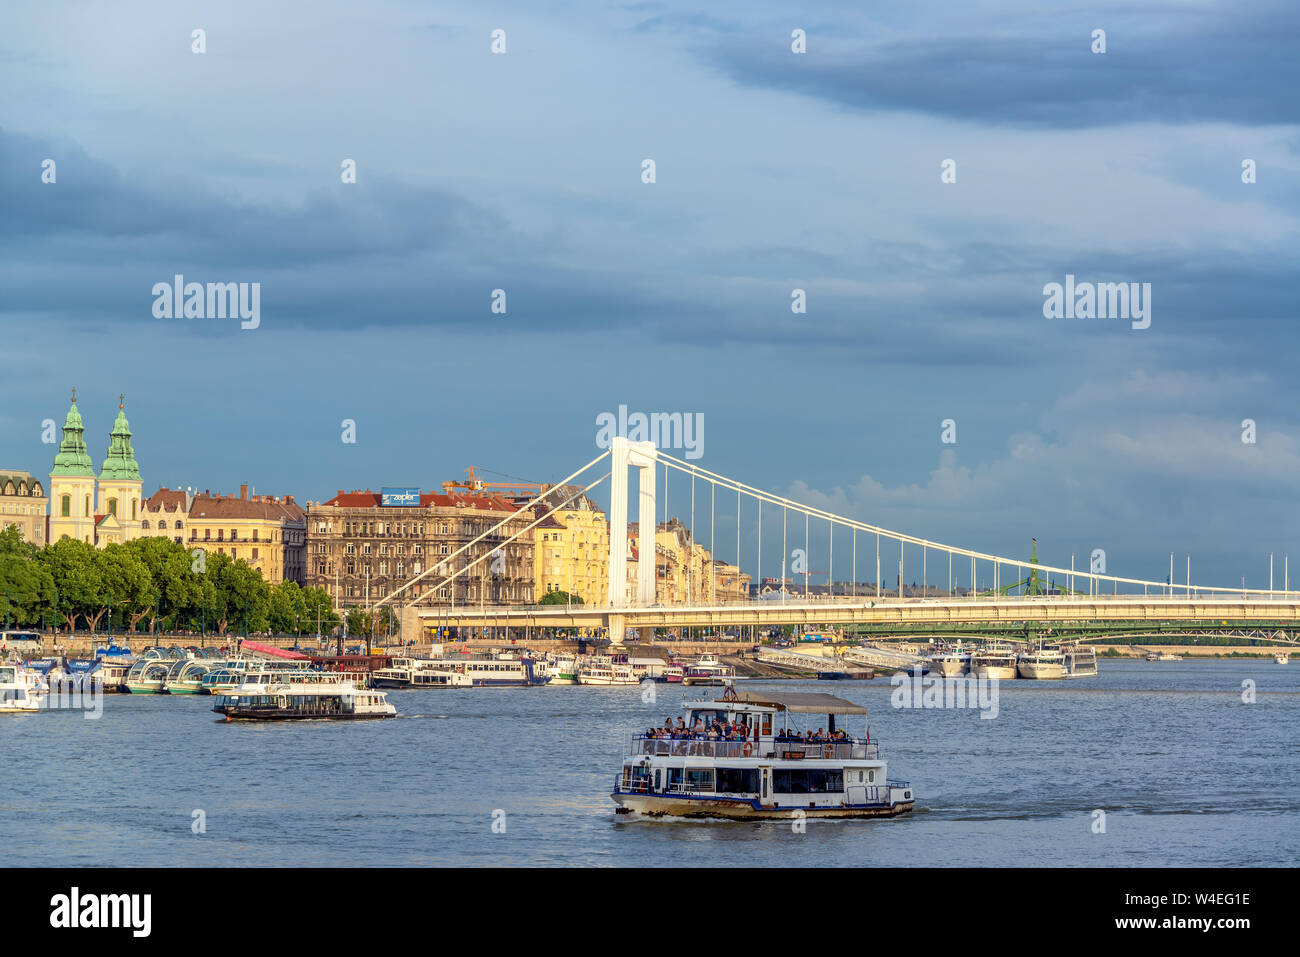 BUDAPEST, Ungarn - 28. Juni: Sehenswürdigkeiten Boot vorbei an der Donau in Budapest, Ungarn, am 28. Juni 2018 Stockfoto